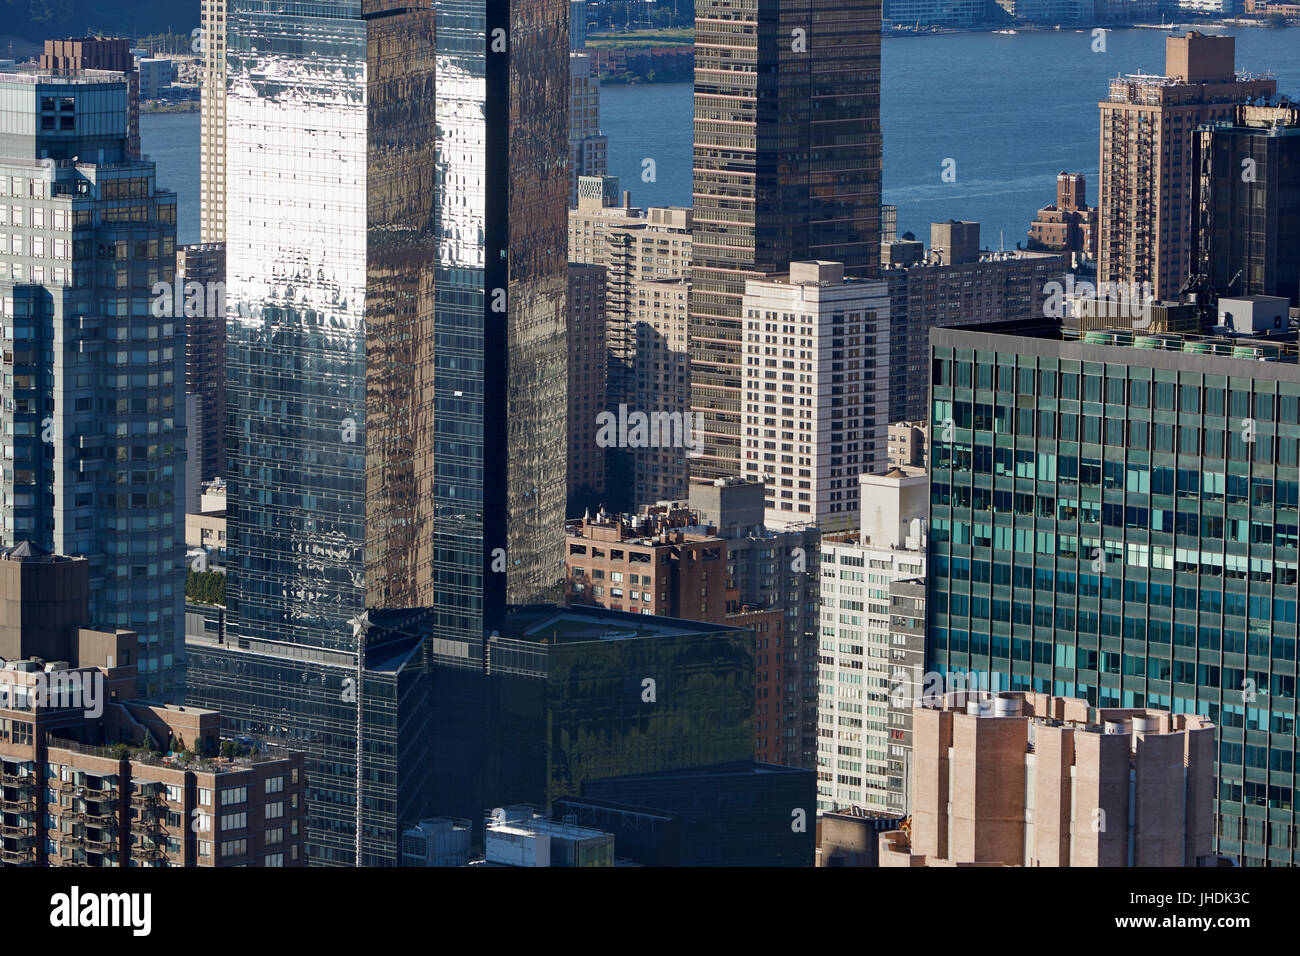 New York City Manhattan skyline vue aérienne avec le verre et les gratte-ciel modernes Banque D'Images